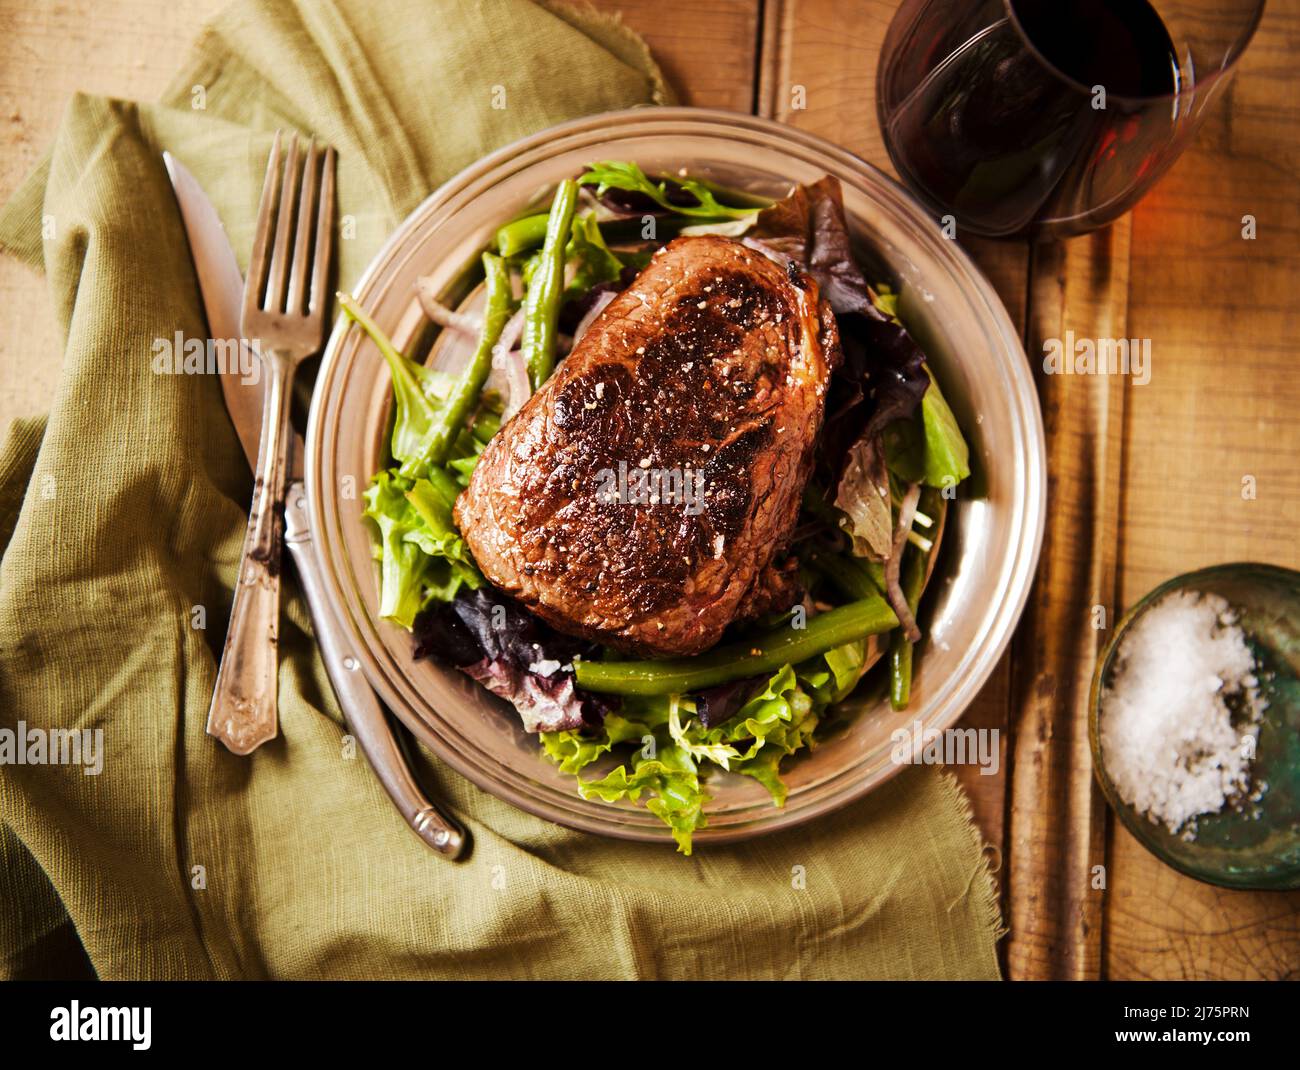 Sliced Grass Fed Sirloin Steak auf einem Bett mit Wein Stockfoto